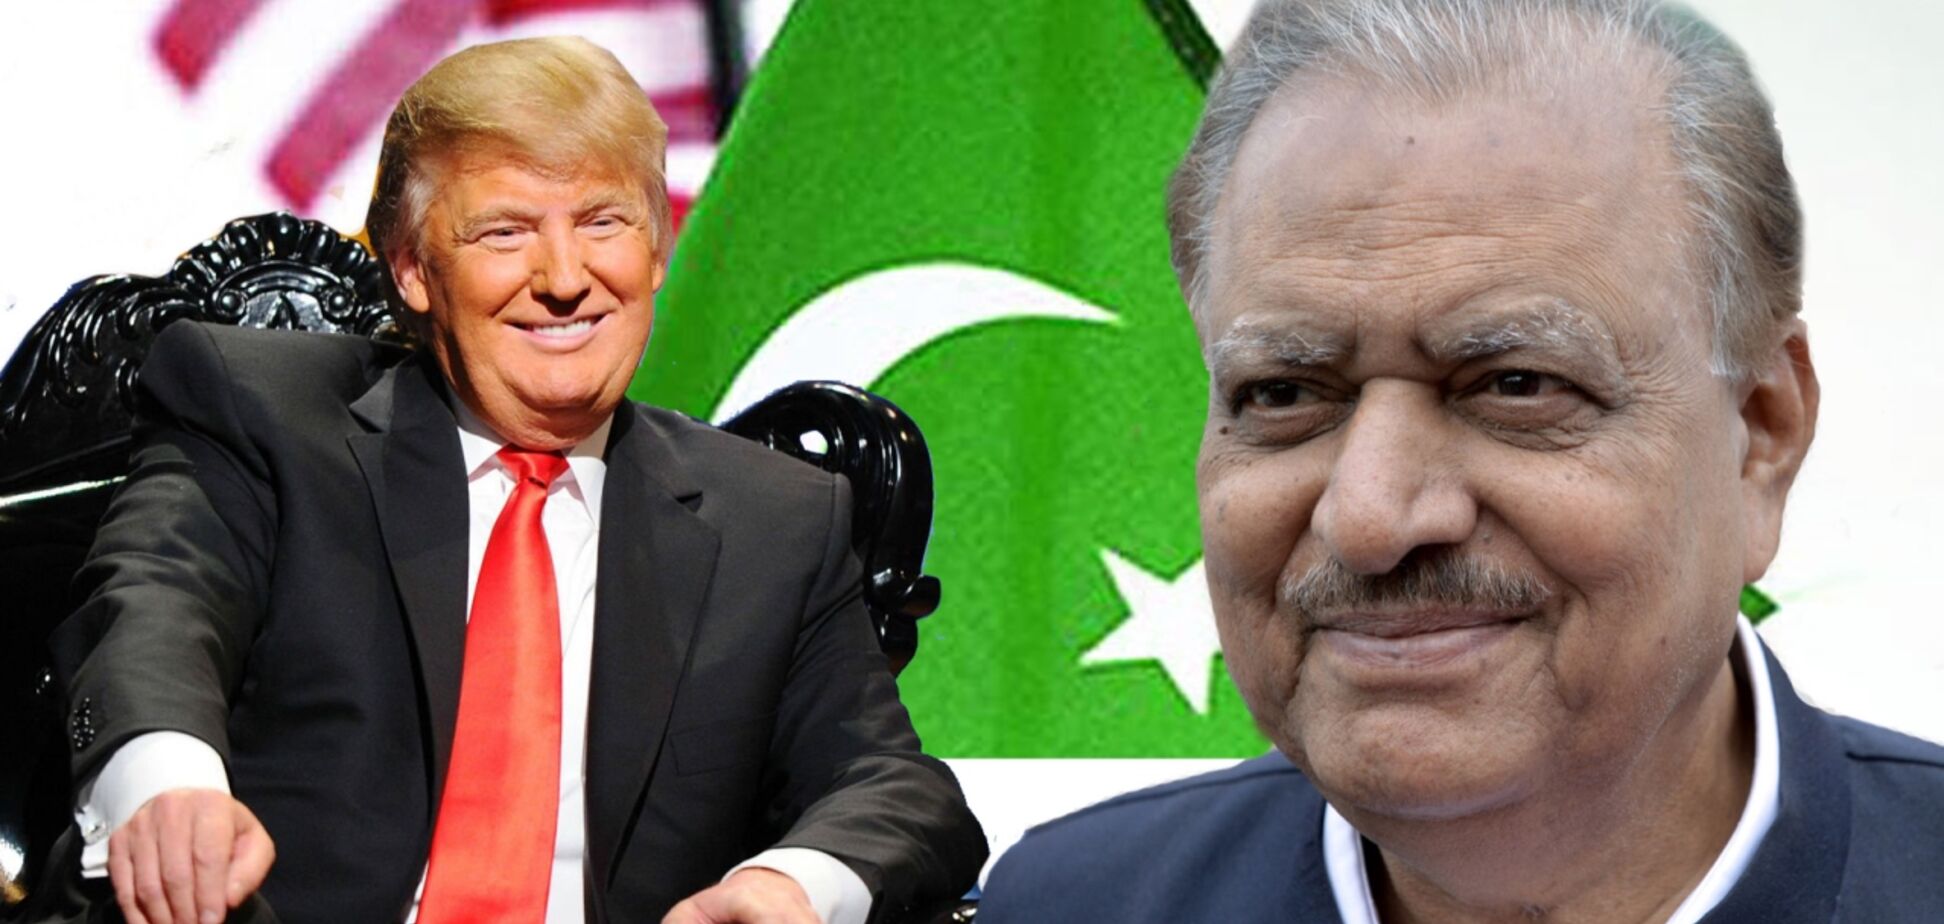 Америка – Пакистан: дружня ворожнеча чи ворожа дружба?